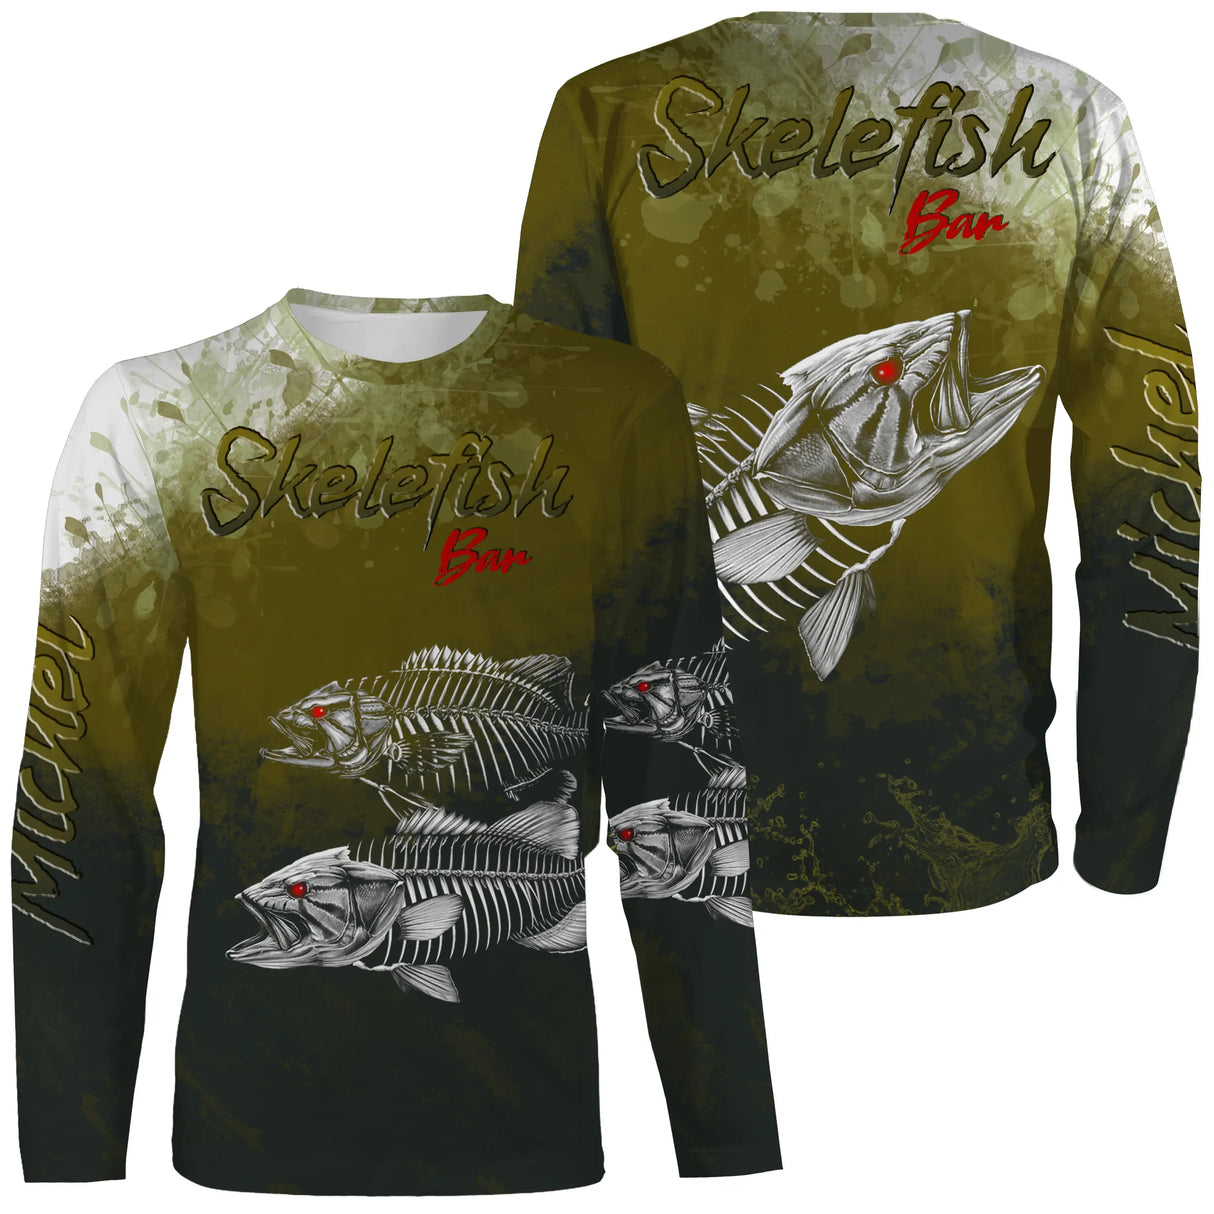 Personalisiertes Anti-UV-Angel-T-Shirt, originelles Fischergeschenk, Skelefish Bar – CT30072226